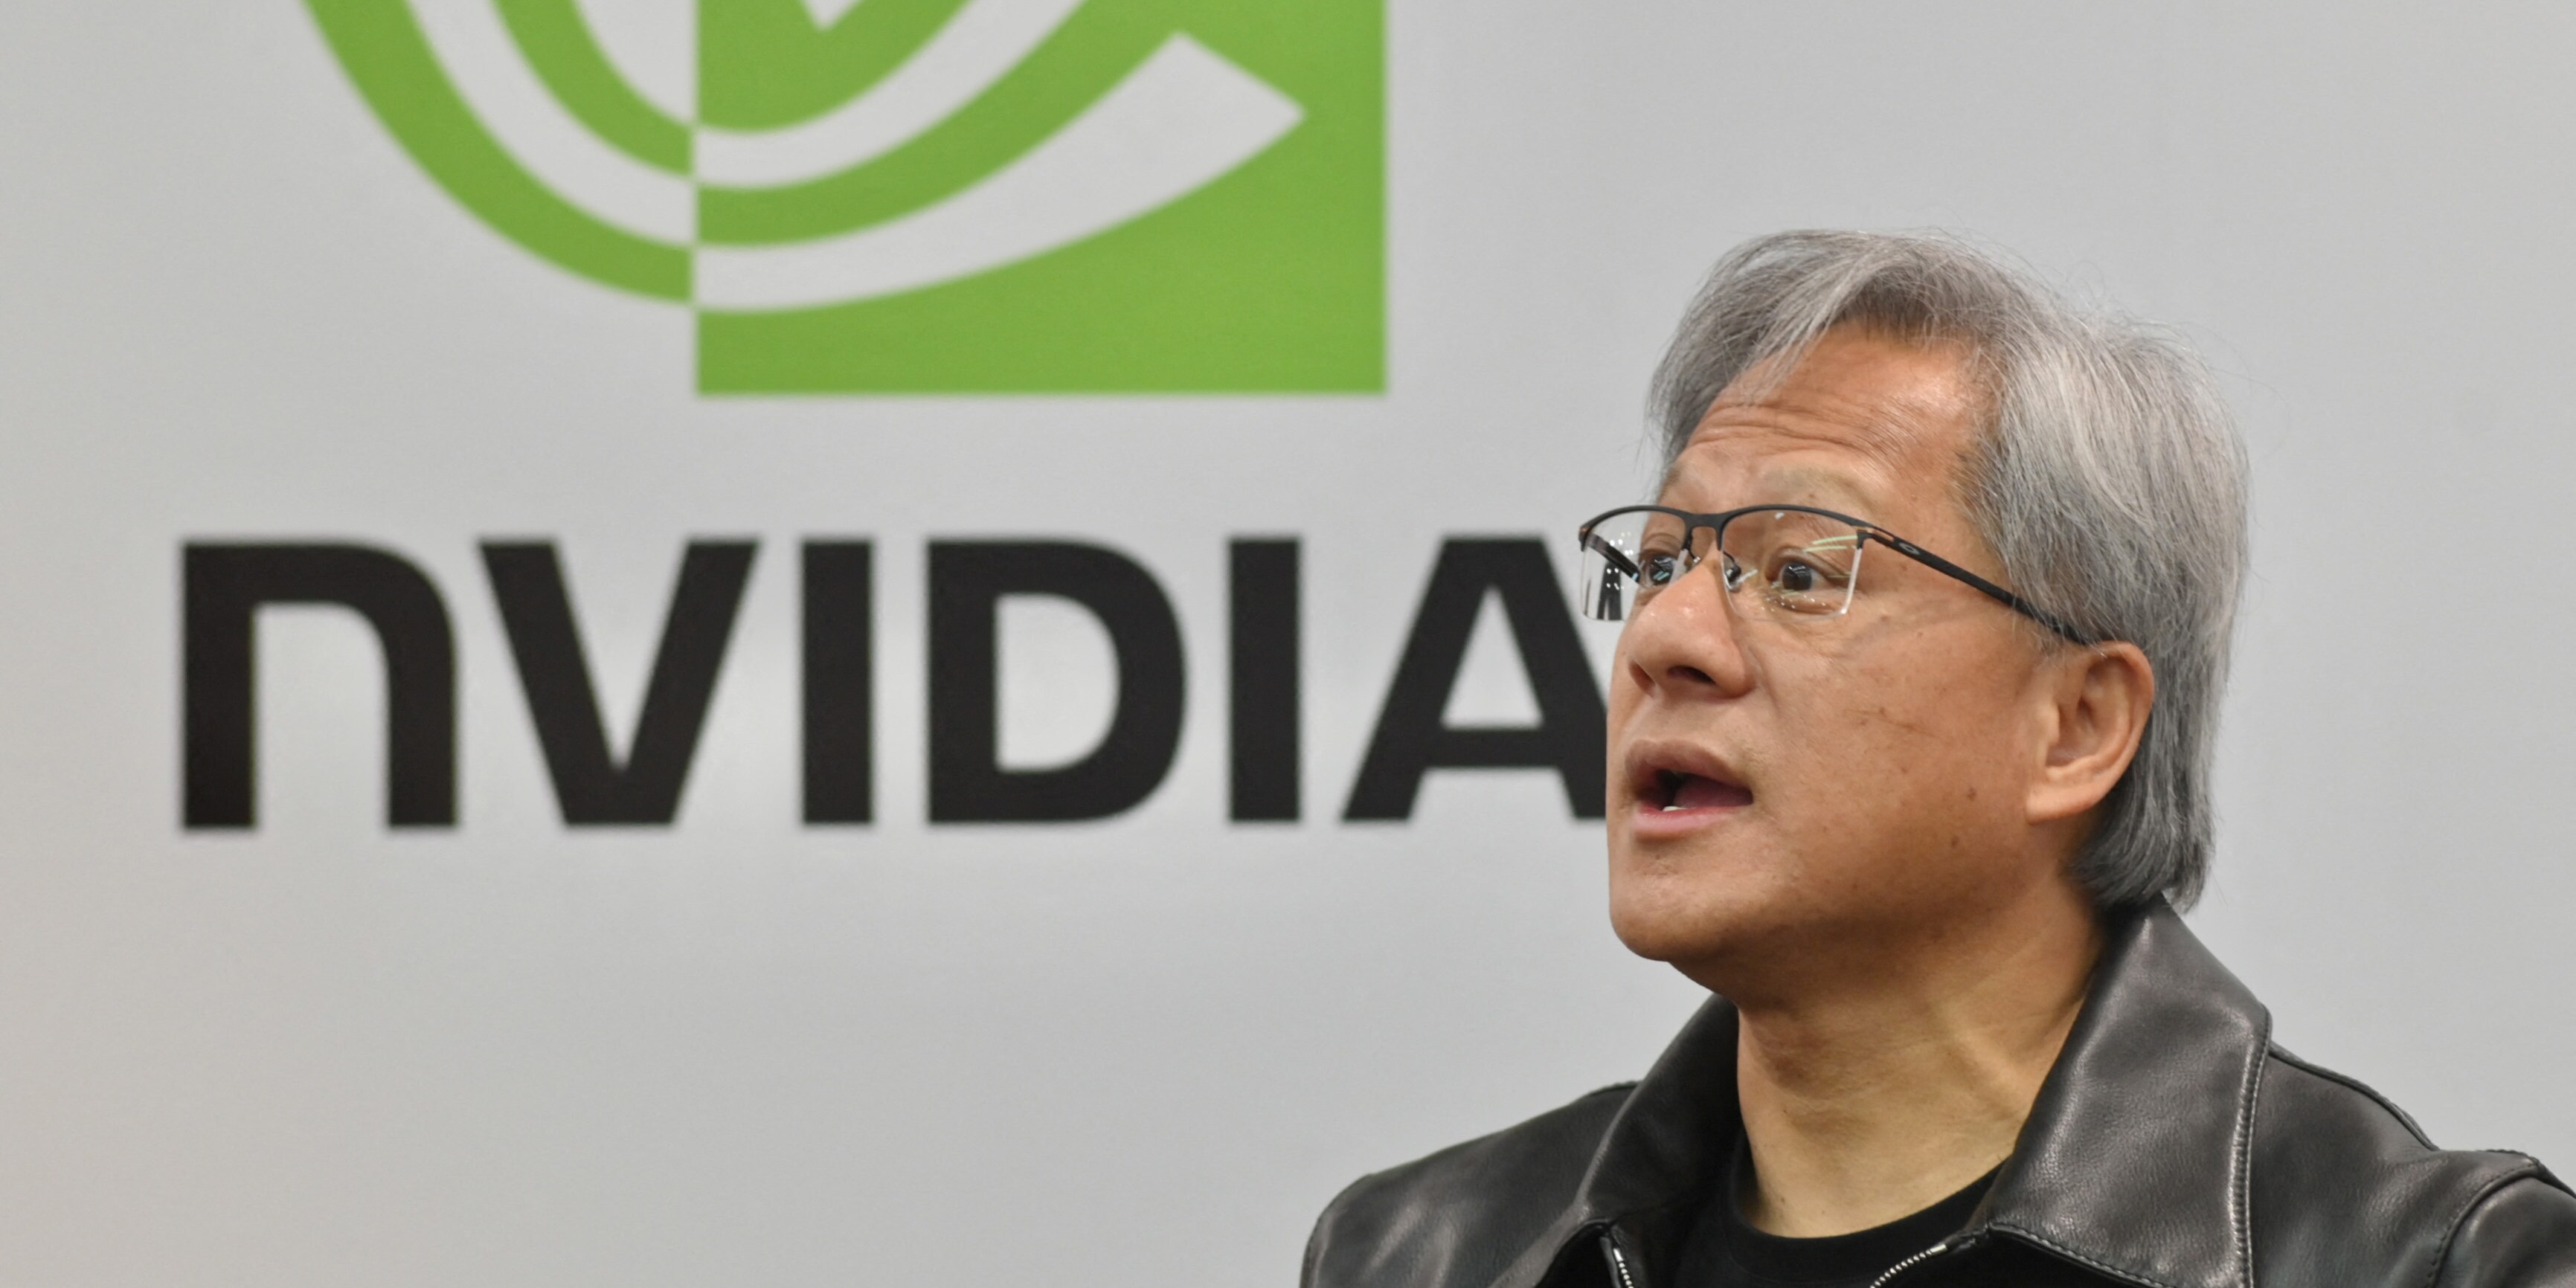 peking umgeht wohl us-embargo - verbotene nvidia-chips tauchen in chinesischen servern auf